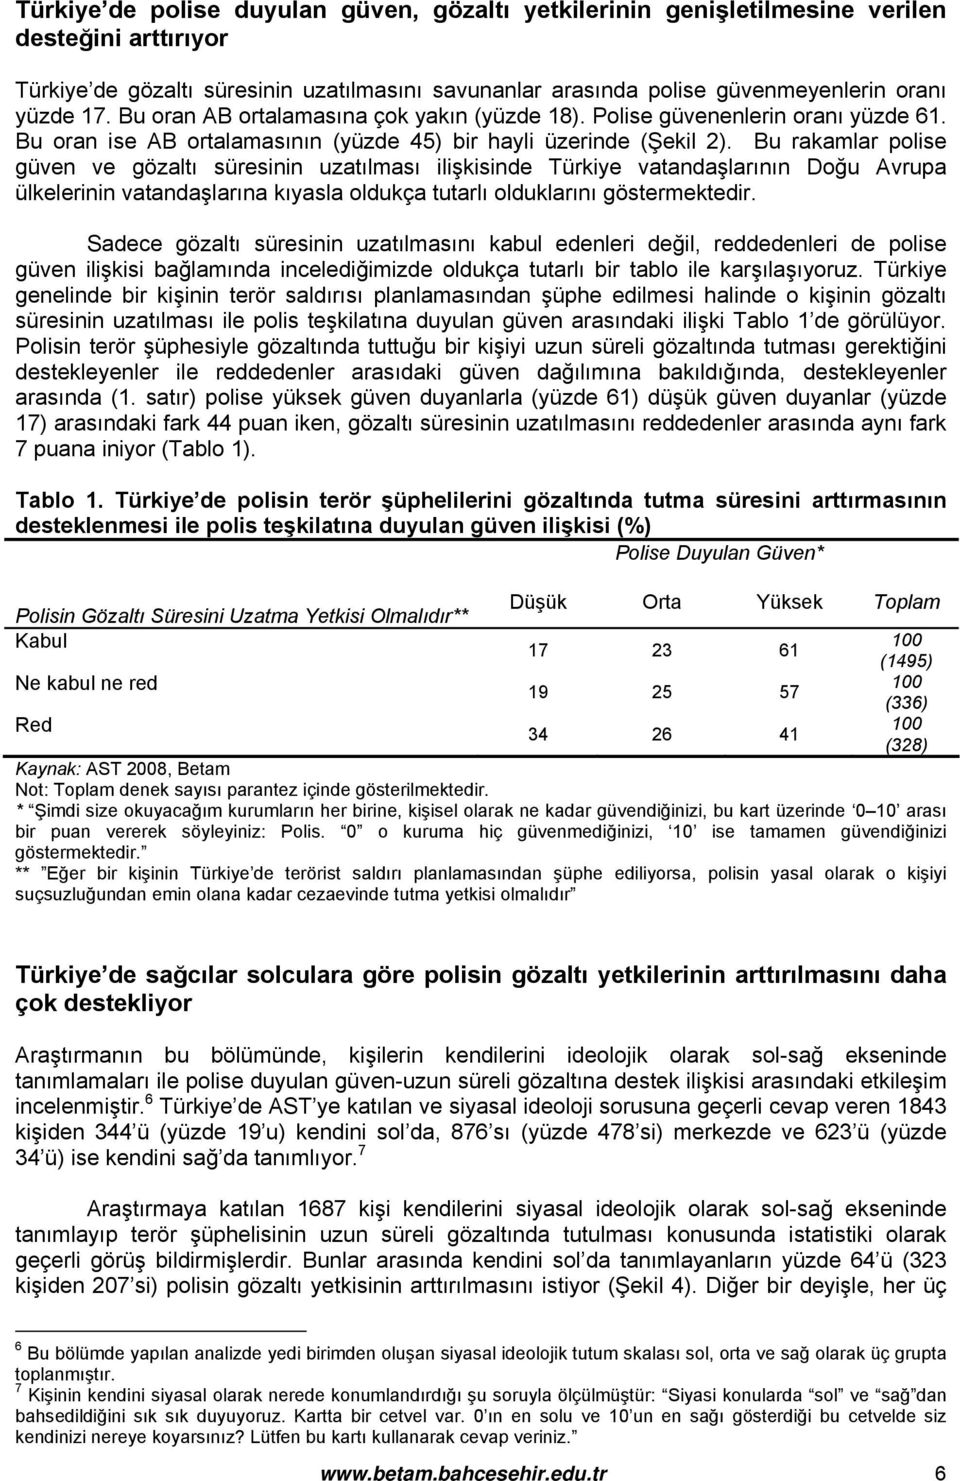 Bu rakamlar polise güven ve gözaltı süresinin uzatılması ilişkisinde Türkiye vatandaşlarının Doğu Avrupa ülkelerinin vatandaşlarına kıyasla oldukça tutarlı olduklarını göstermektedir.